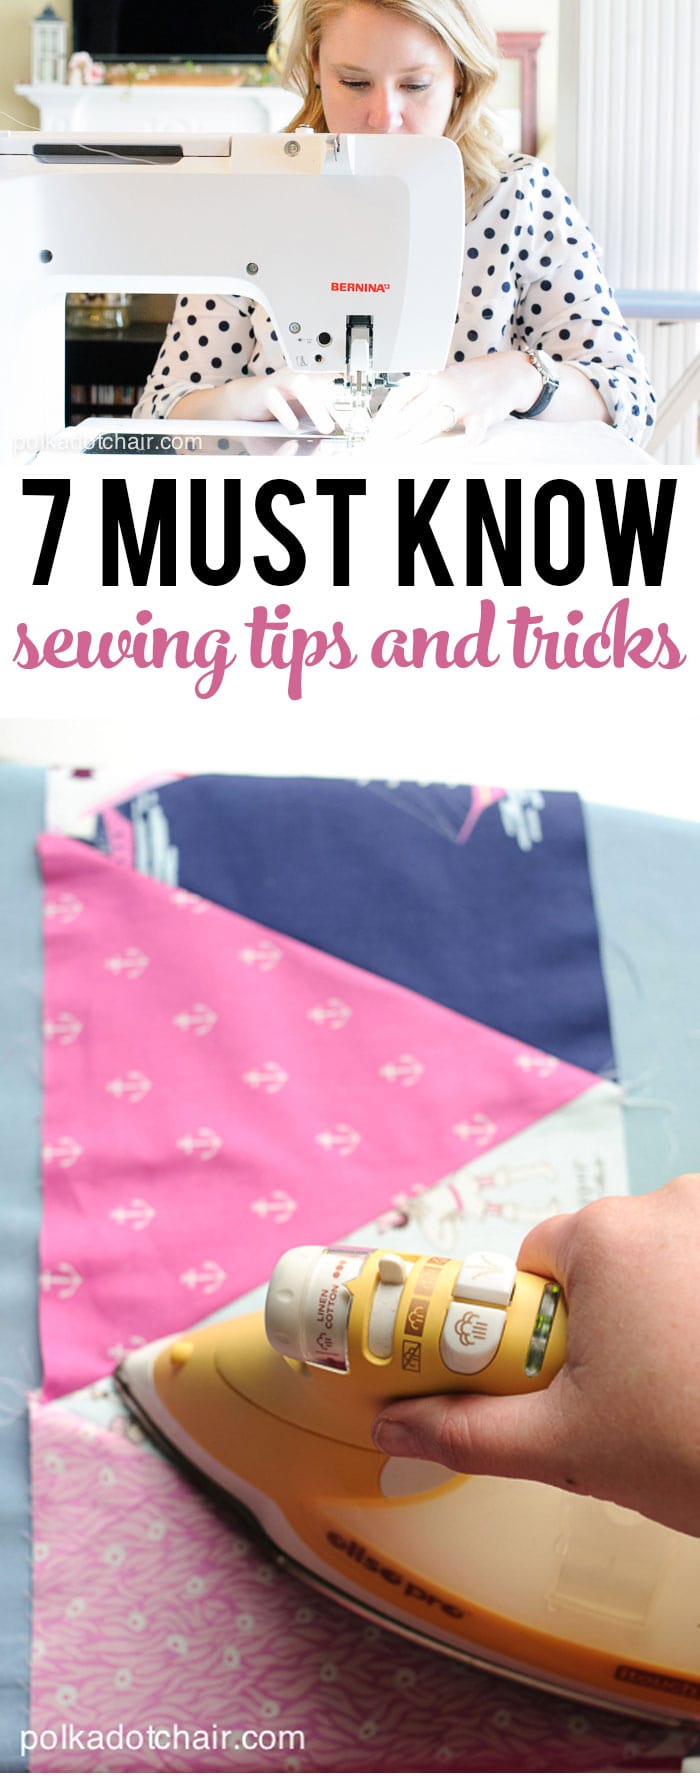 7 trucs et astuces de couture, à lire surtout si vous êtes une nouvelle couturière ou si vous apprenez à coudre.